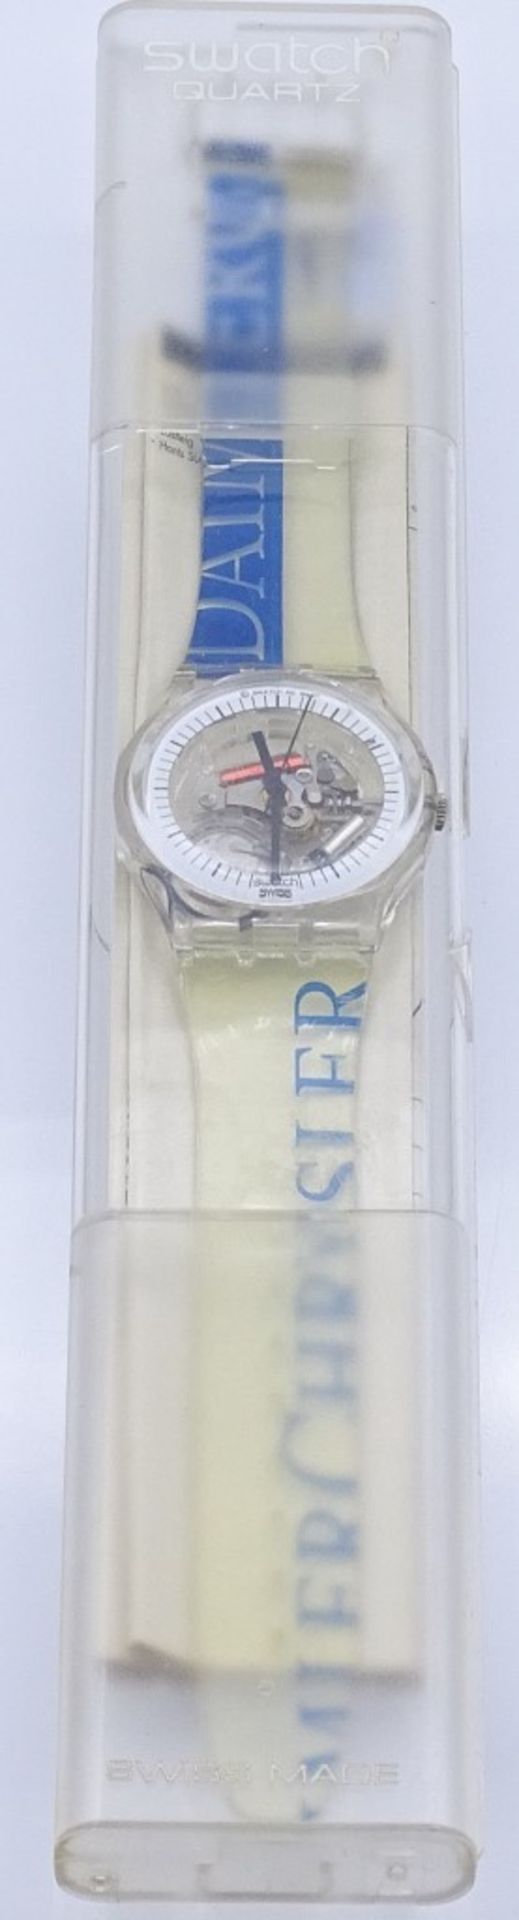 Armbanduhr "Swatch",1990, Quartz,OVP,Funktion nicht überprü- - -22.61 % buyer's premium on the - Bild 4 aus 4